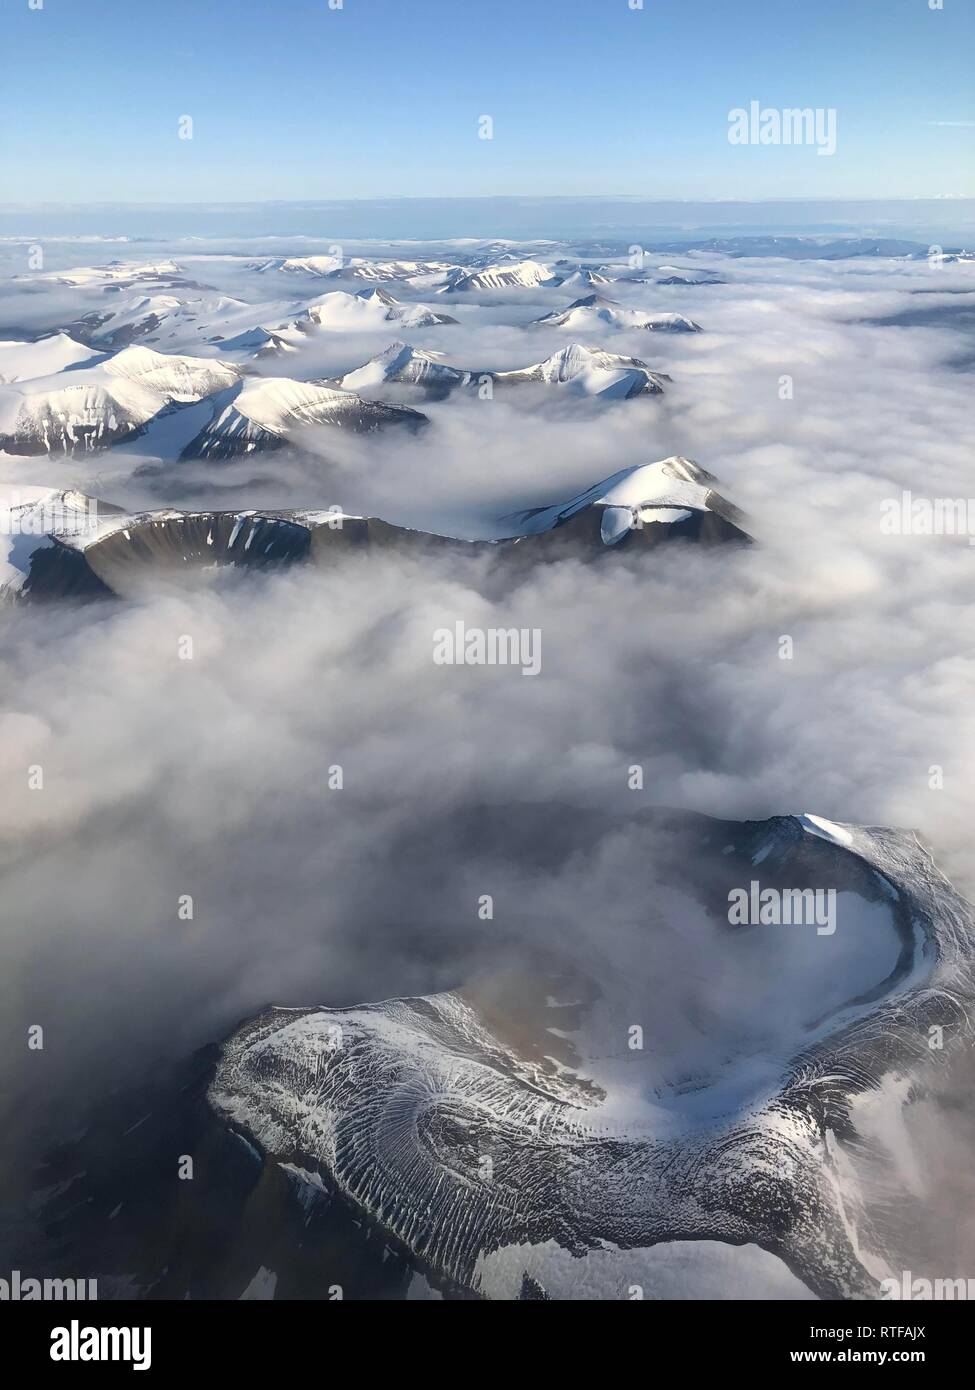 Vue aérienne, sommet de montagne avec de la neige au-dessus de la couverture nuageuse, Spitsbergen, Svalbard, Norvège Banque D'Images